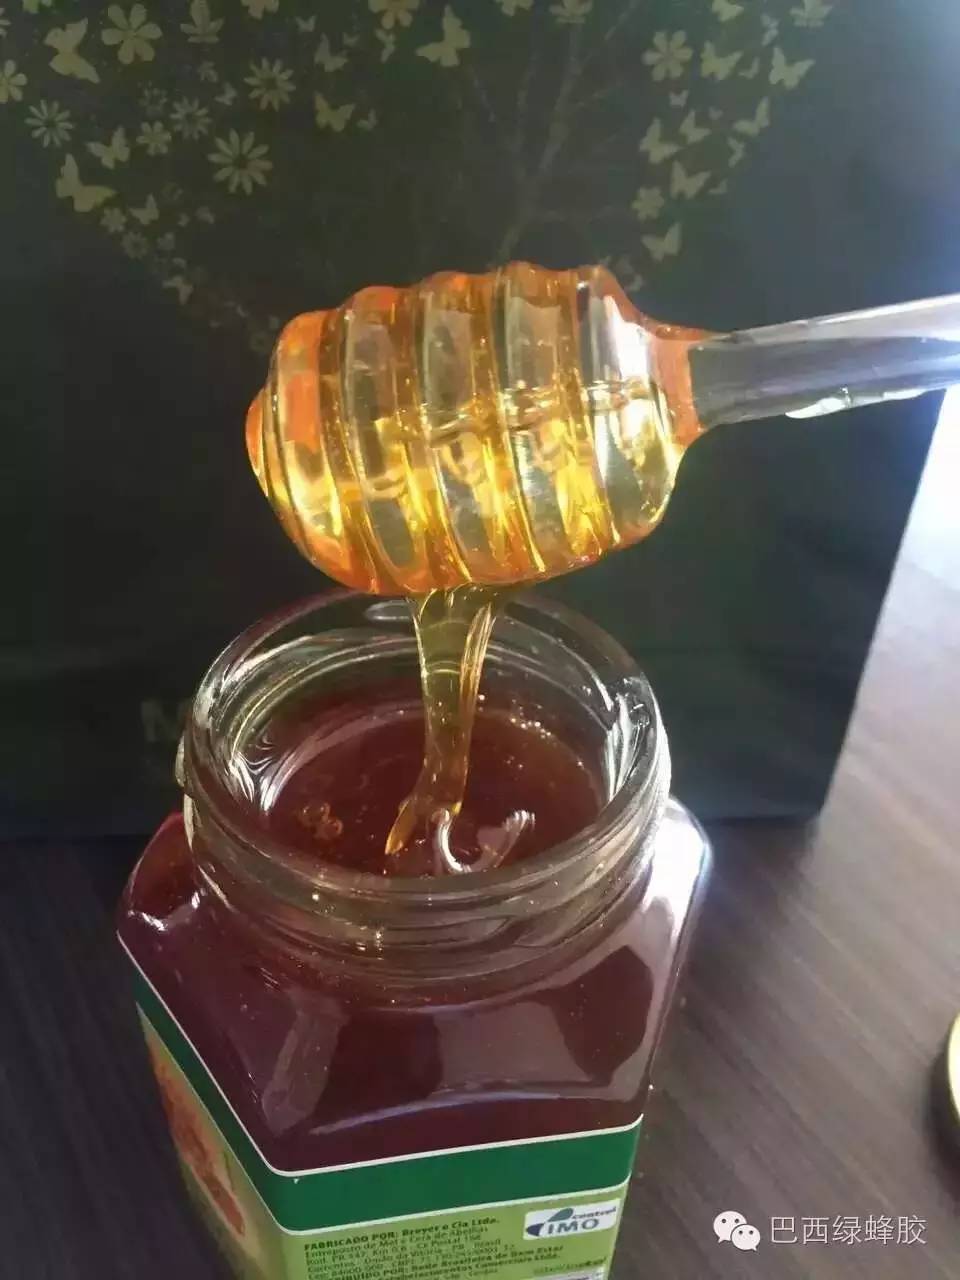 蜂蜜采购 桉树蜂蜜 蜜蜂敌害 椴树蜂蜜价格 什么品牌蜂蜜最好